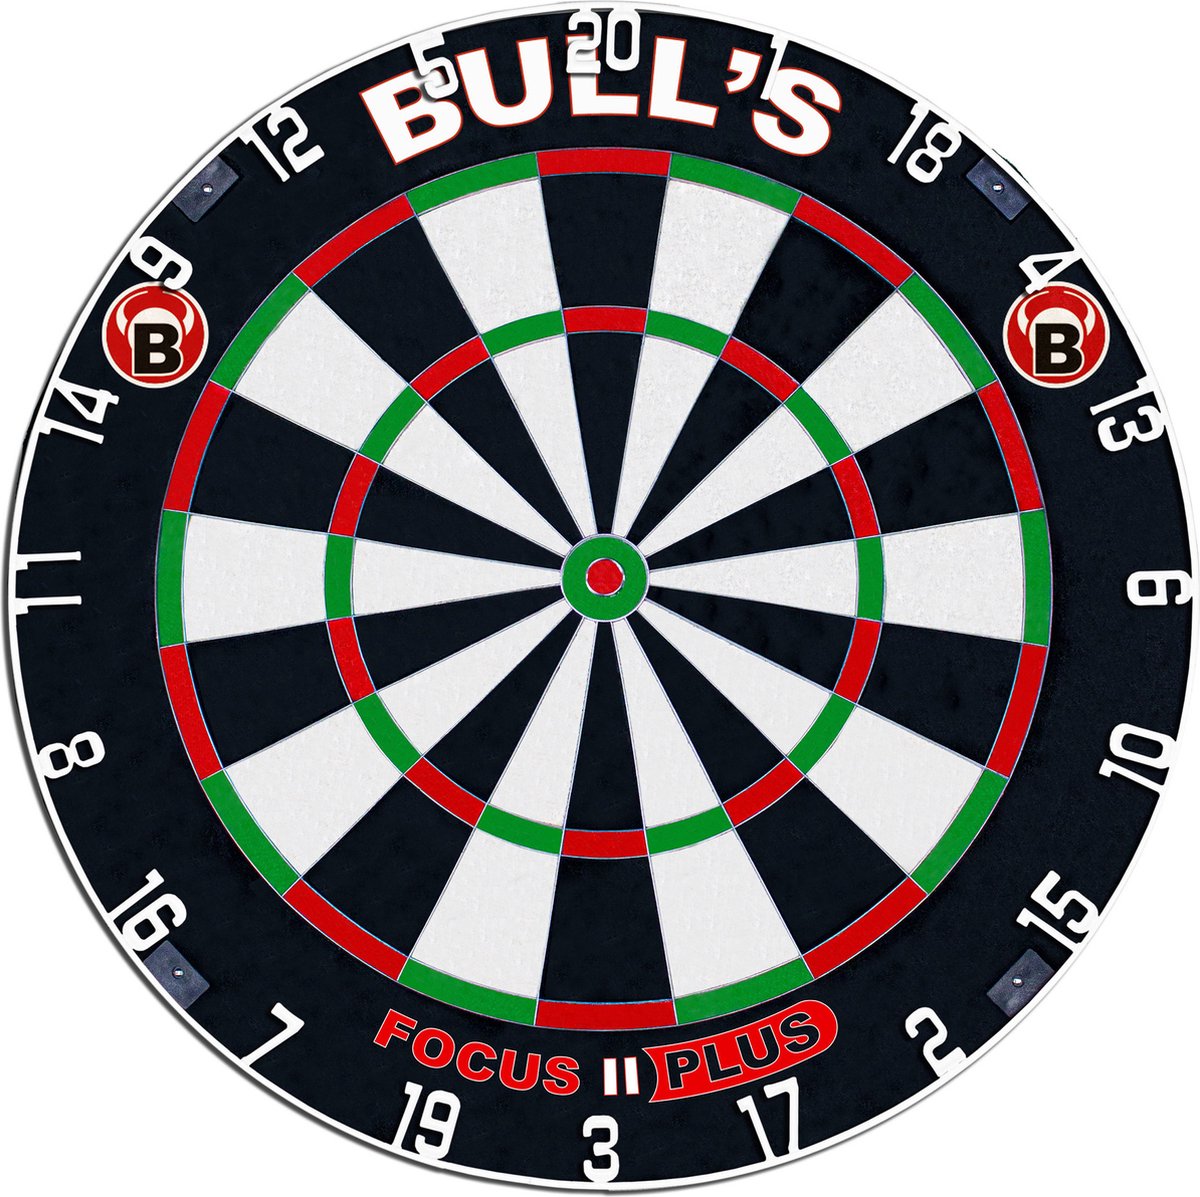 BULL'S Focus II Plus - Dartbord